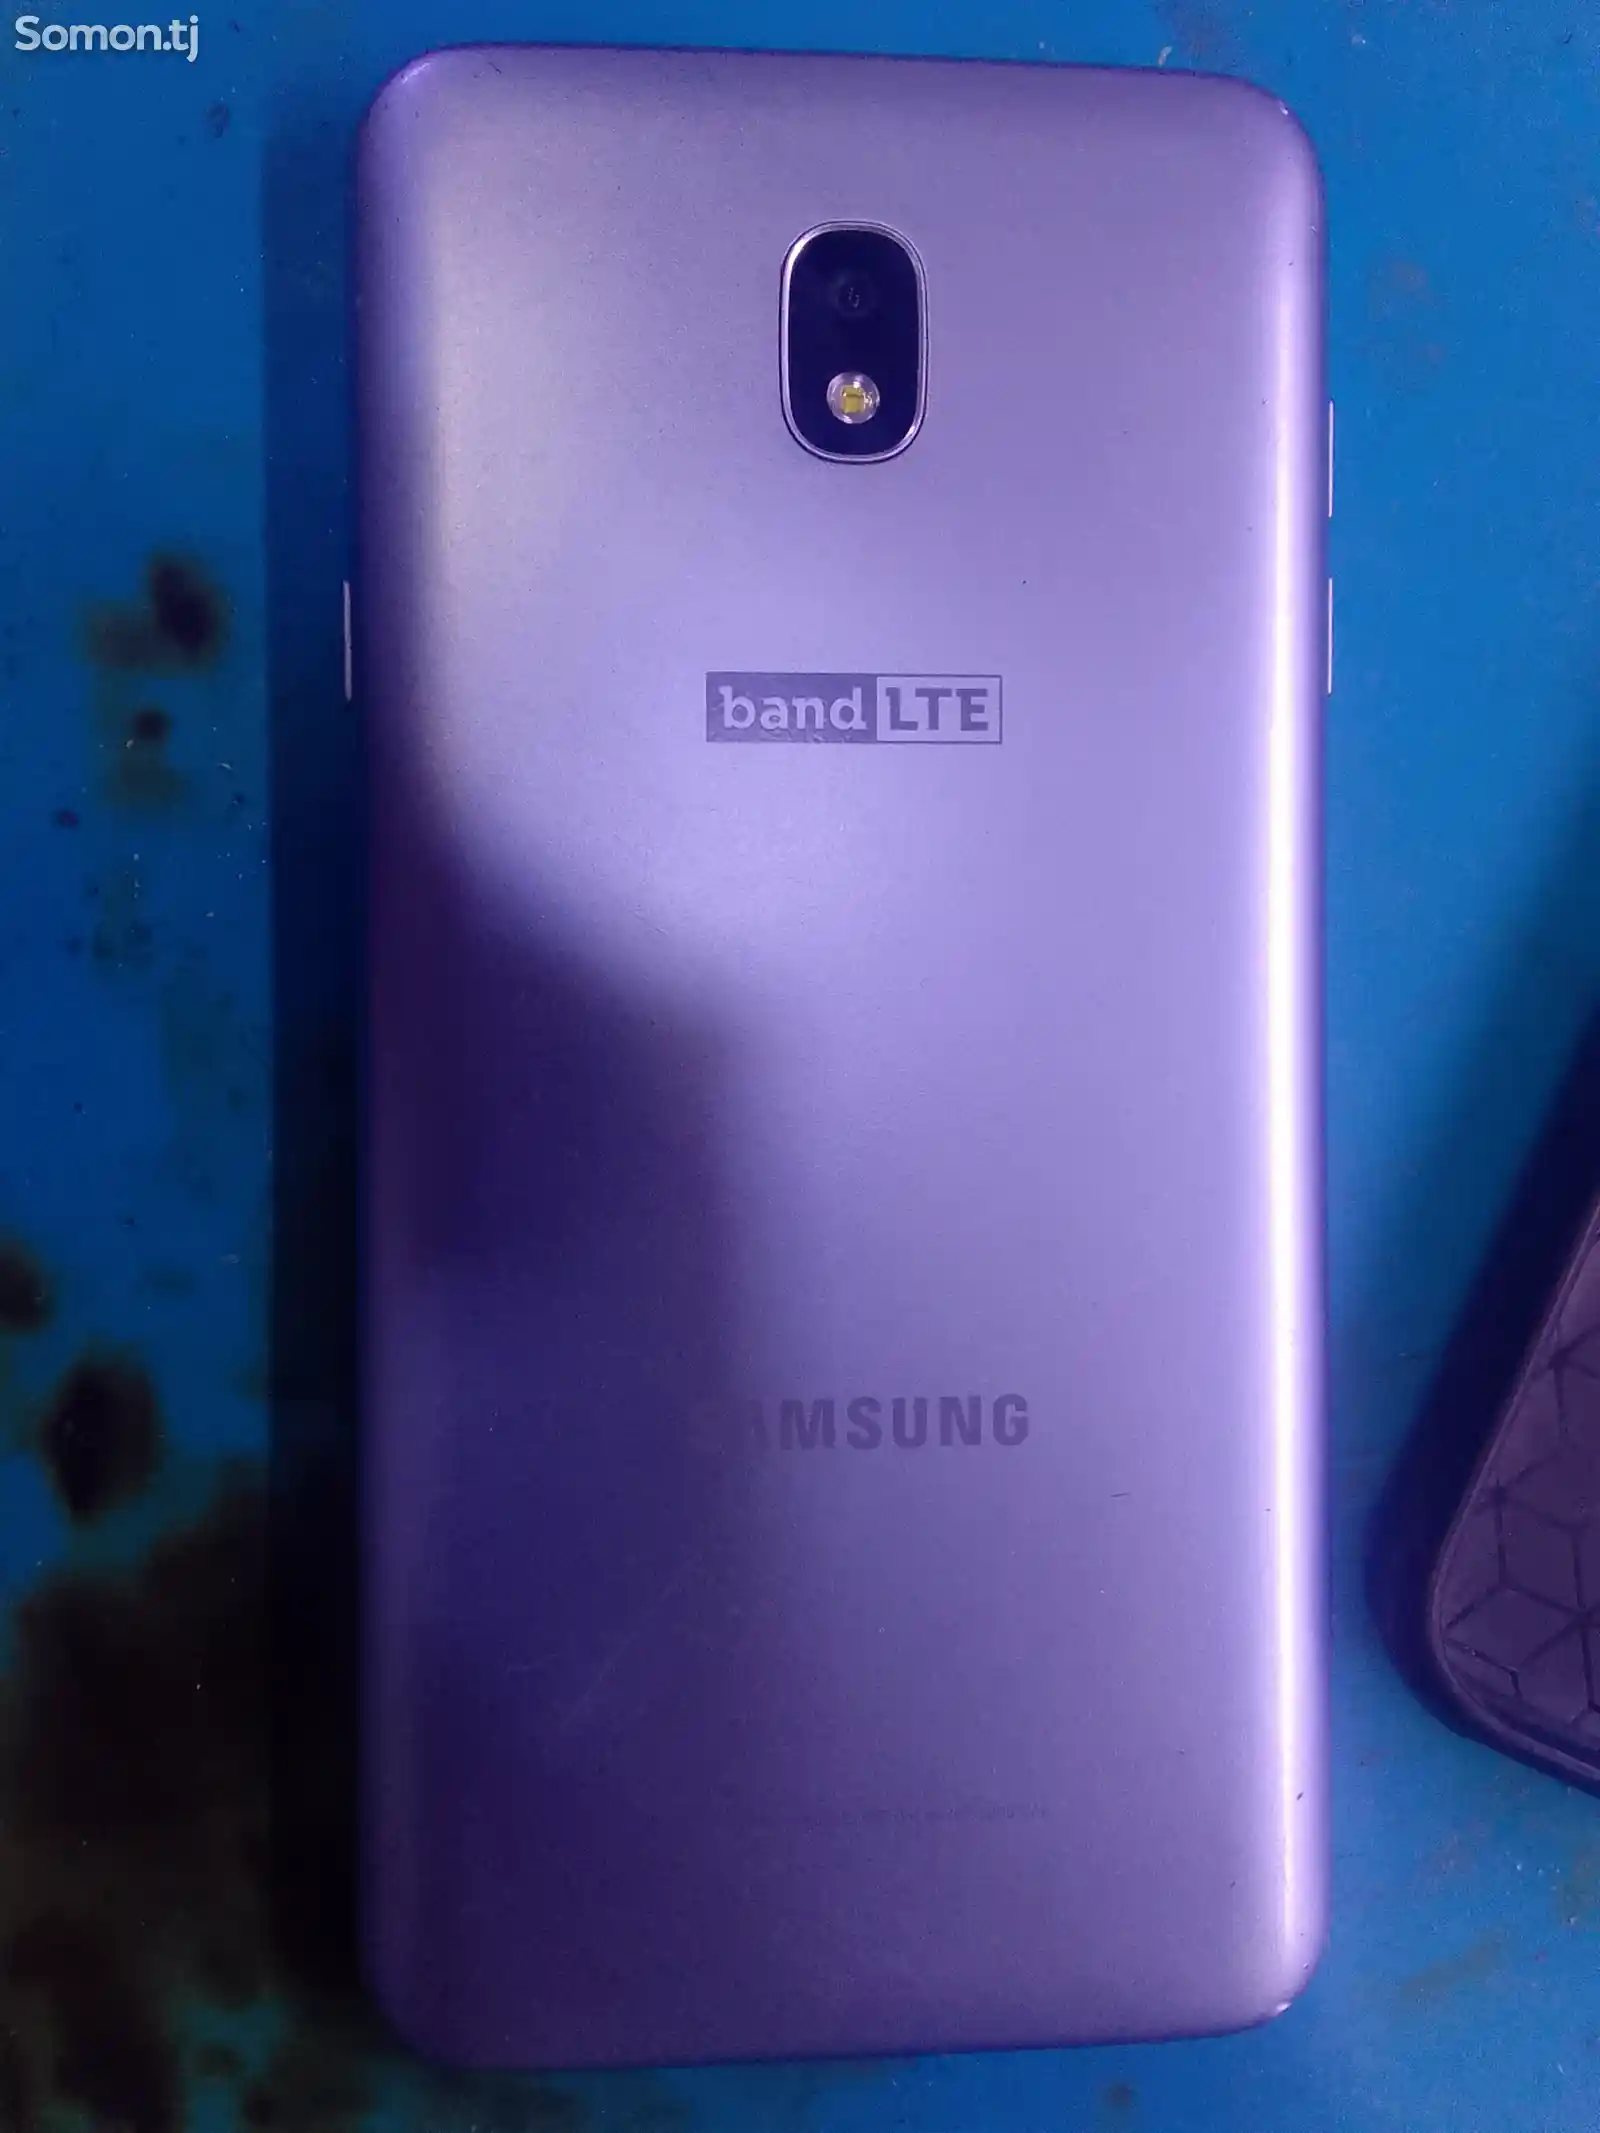 Samsung Galaxy J7-1